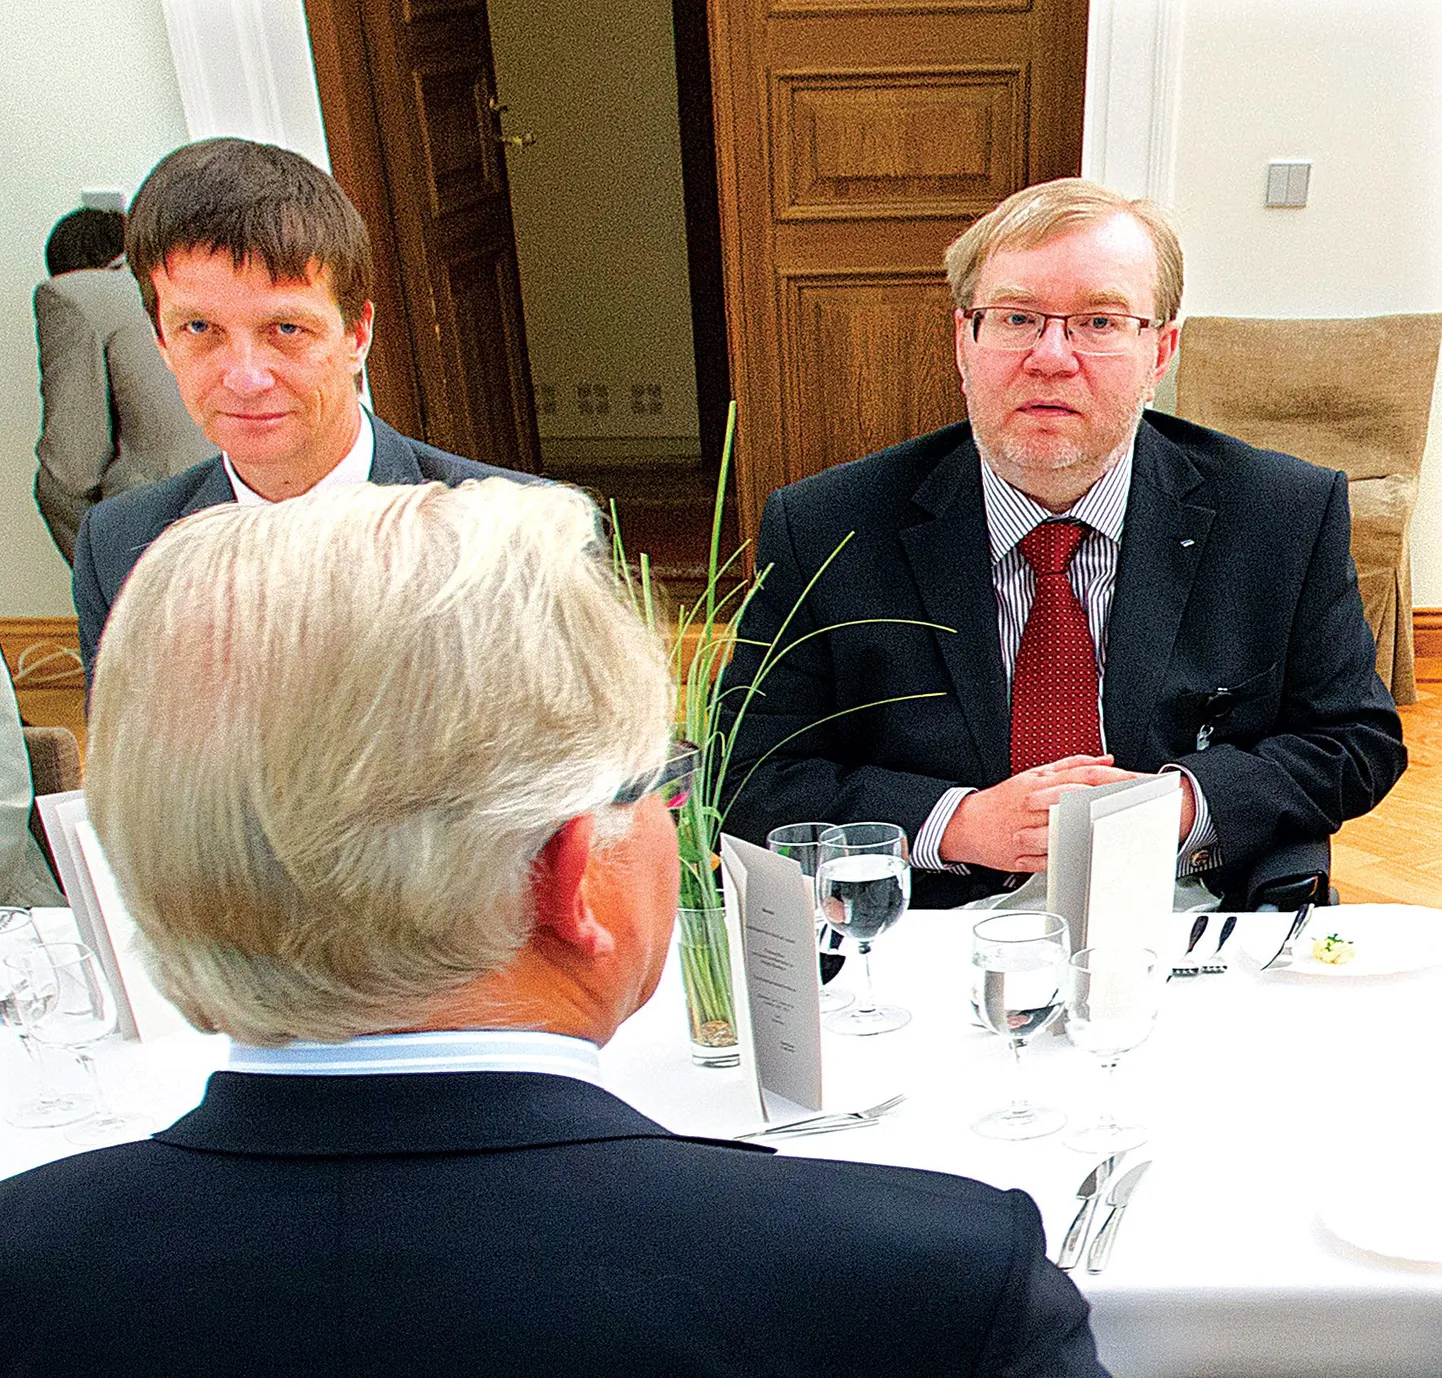 Tänasest Eesti Panga nõukogu esimeheks saav Mart Laar (paremal) viibis eile oma eelkäija Jaan Männiku lahkumiseks korraldatud õhtusöögil, Laari kõrval Eesti Panga president Ardo Hansson.